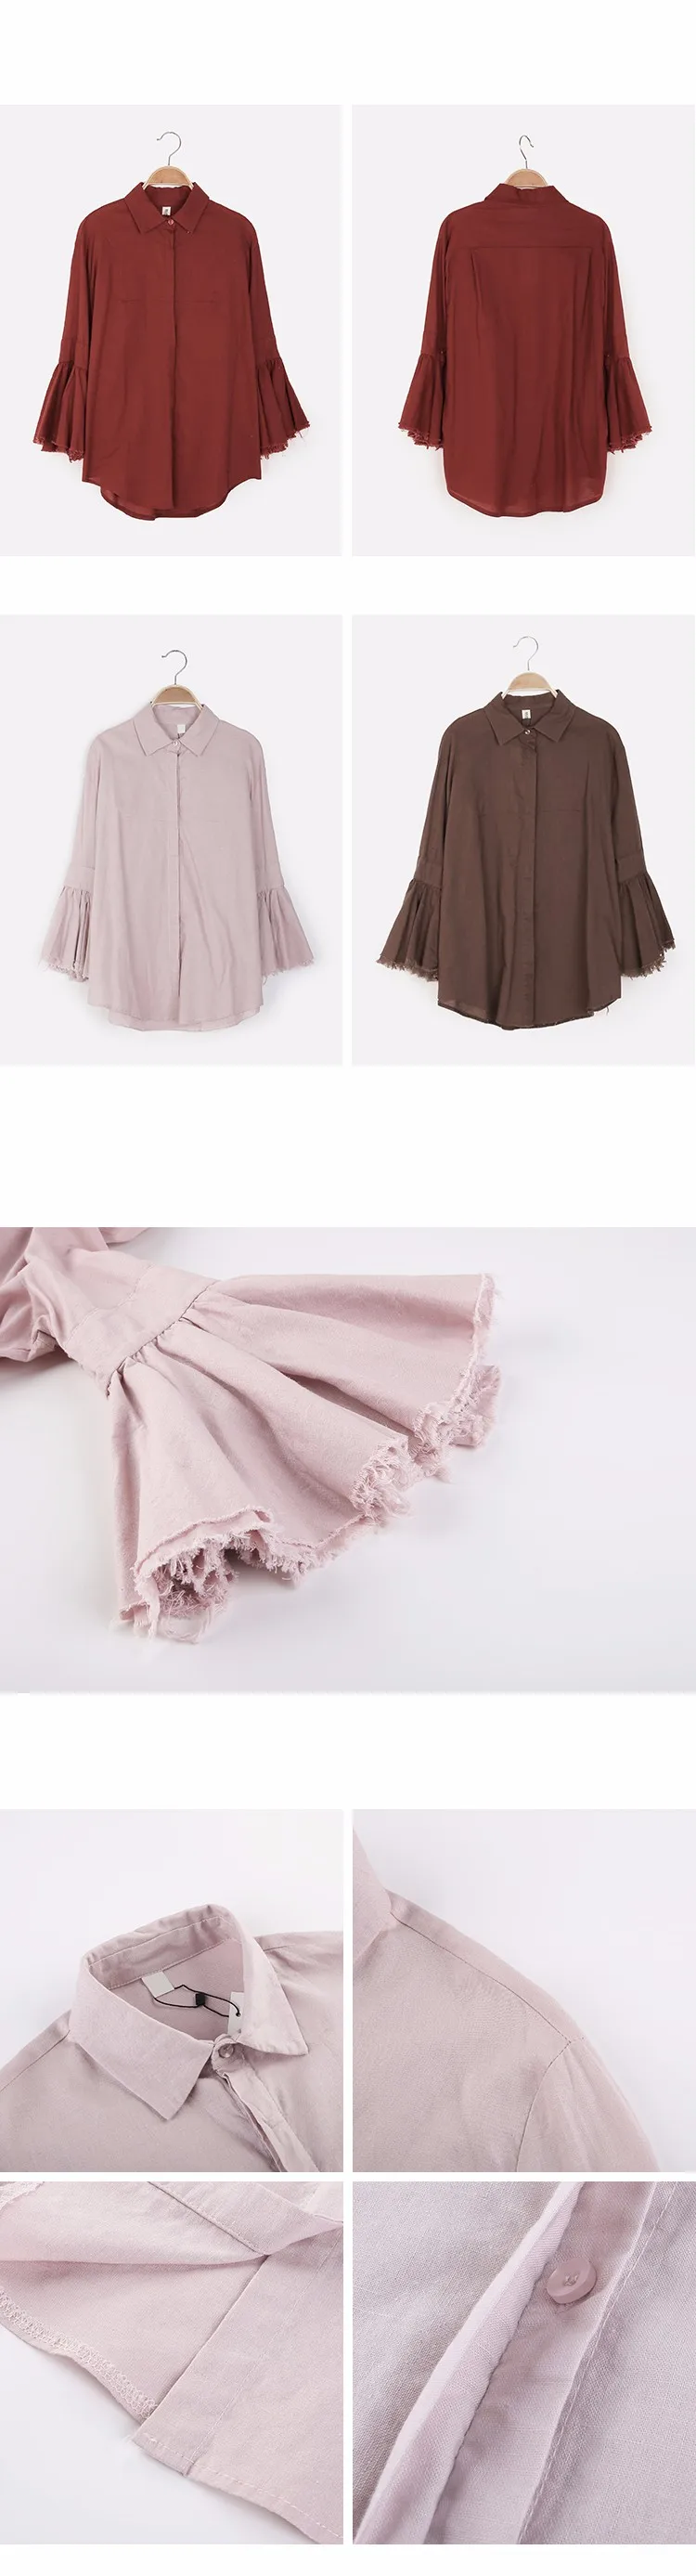 XITAO облегающая Длинная женская рубашка, корейская мода, отложной воротник, однобортная, длинная, на пуговицах, с расклешенными рукавами, осень, MMB-003